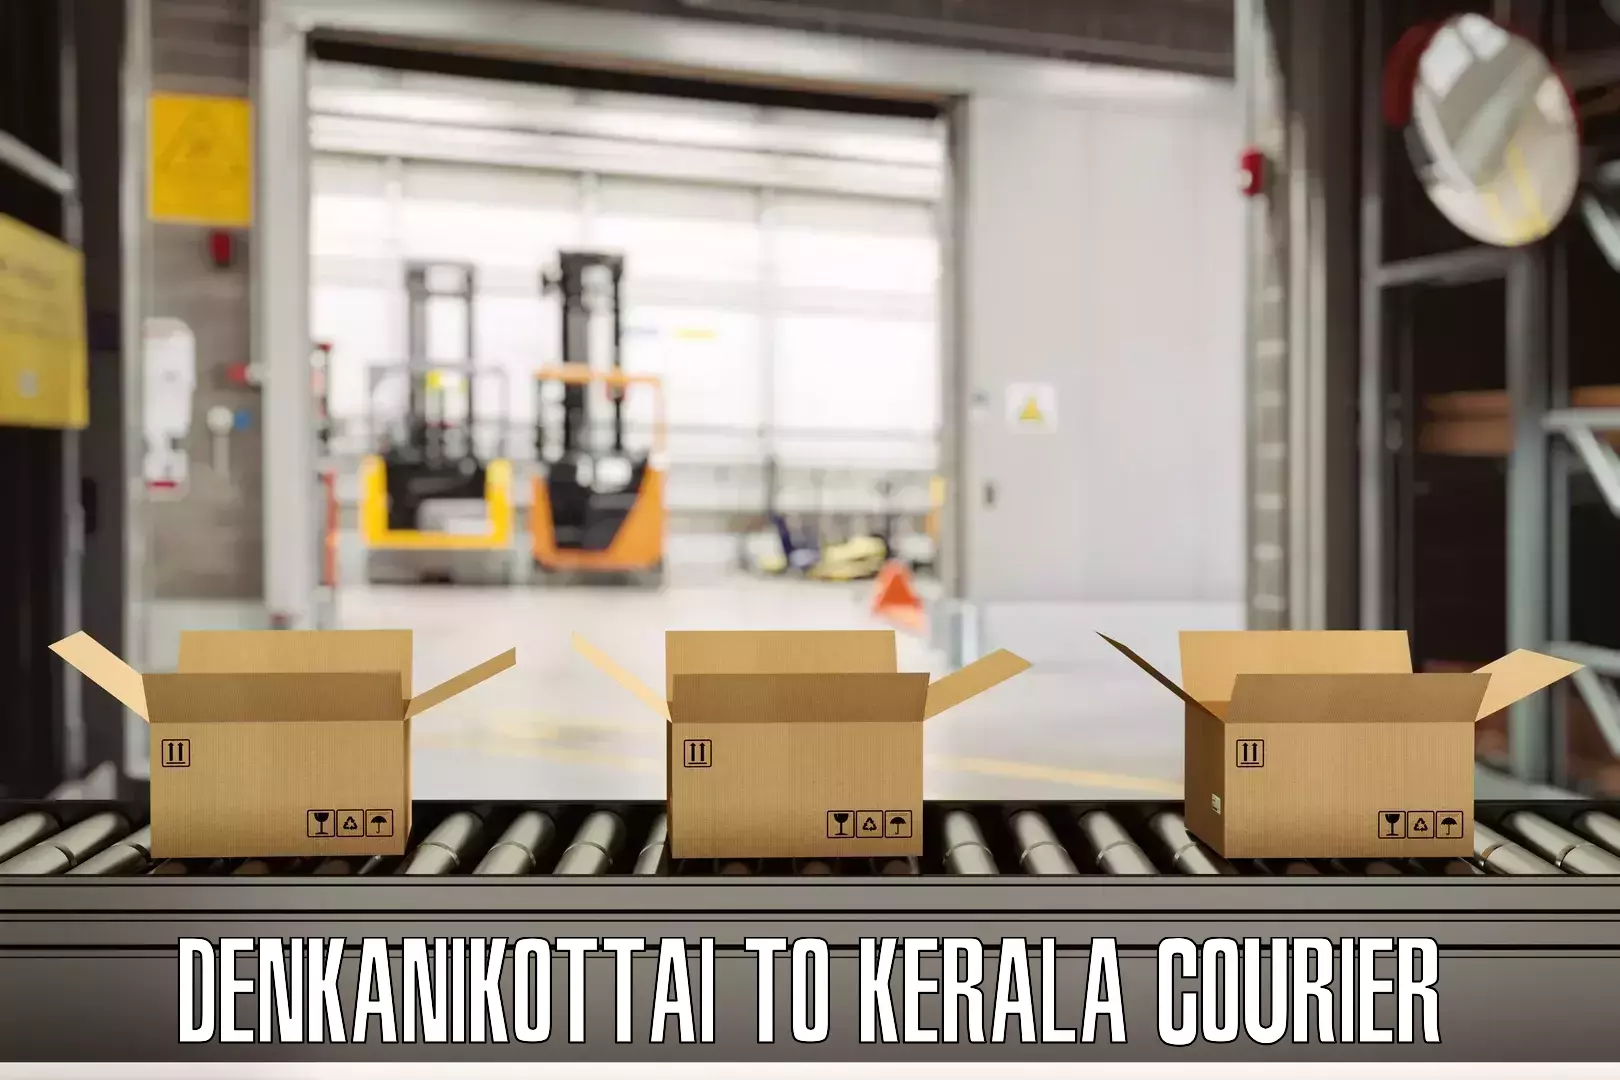 Luggage transport service Denkanikottai to Kerala